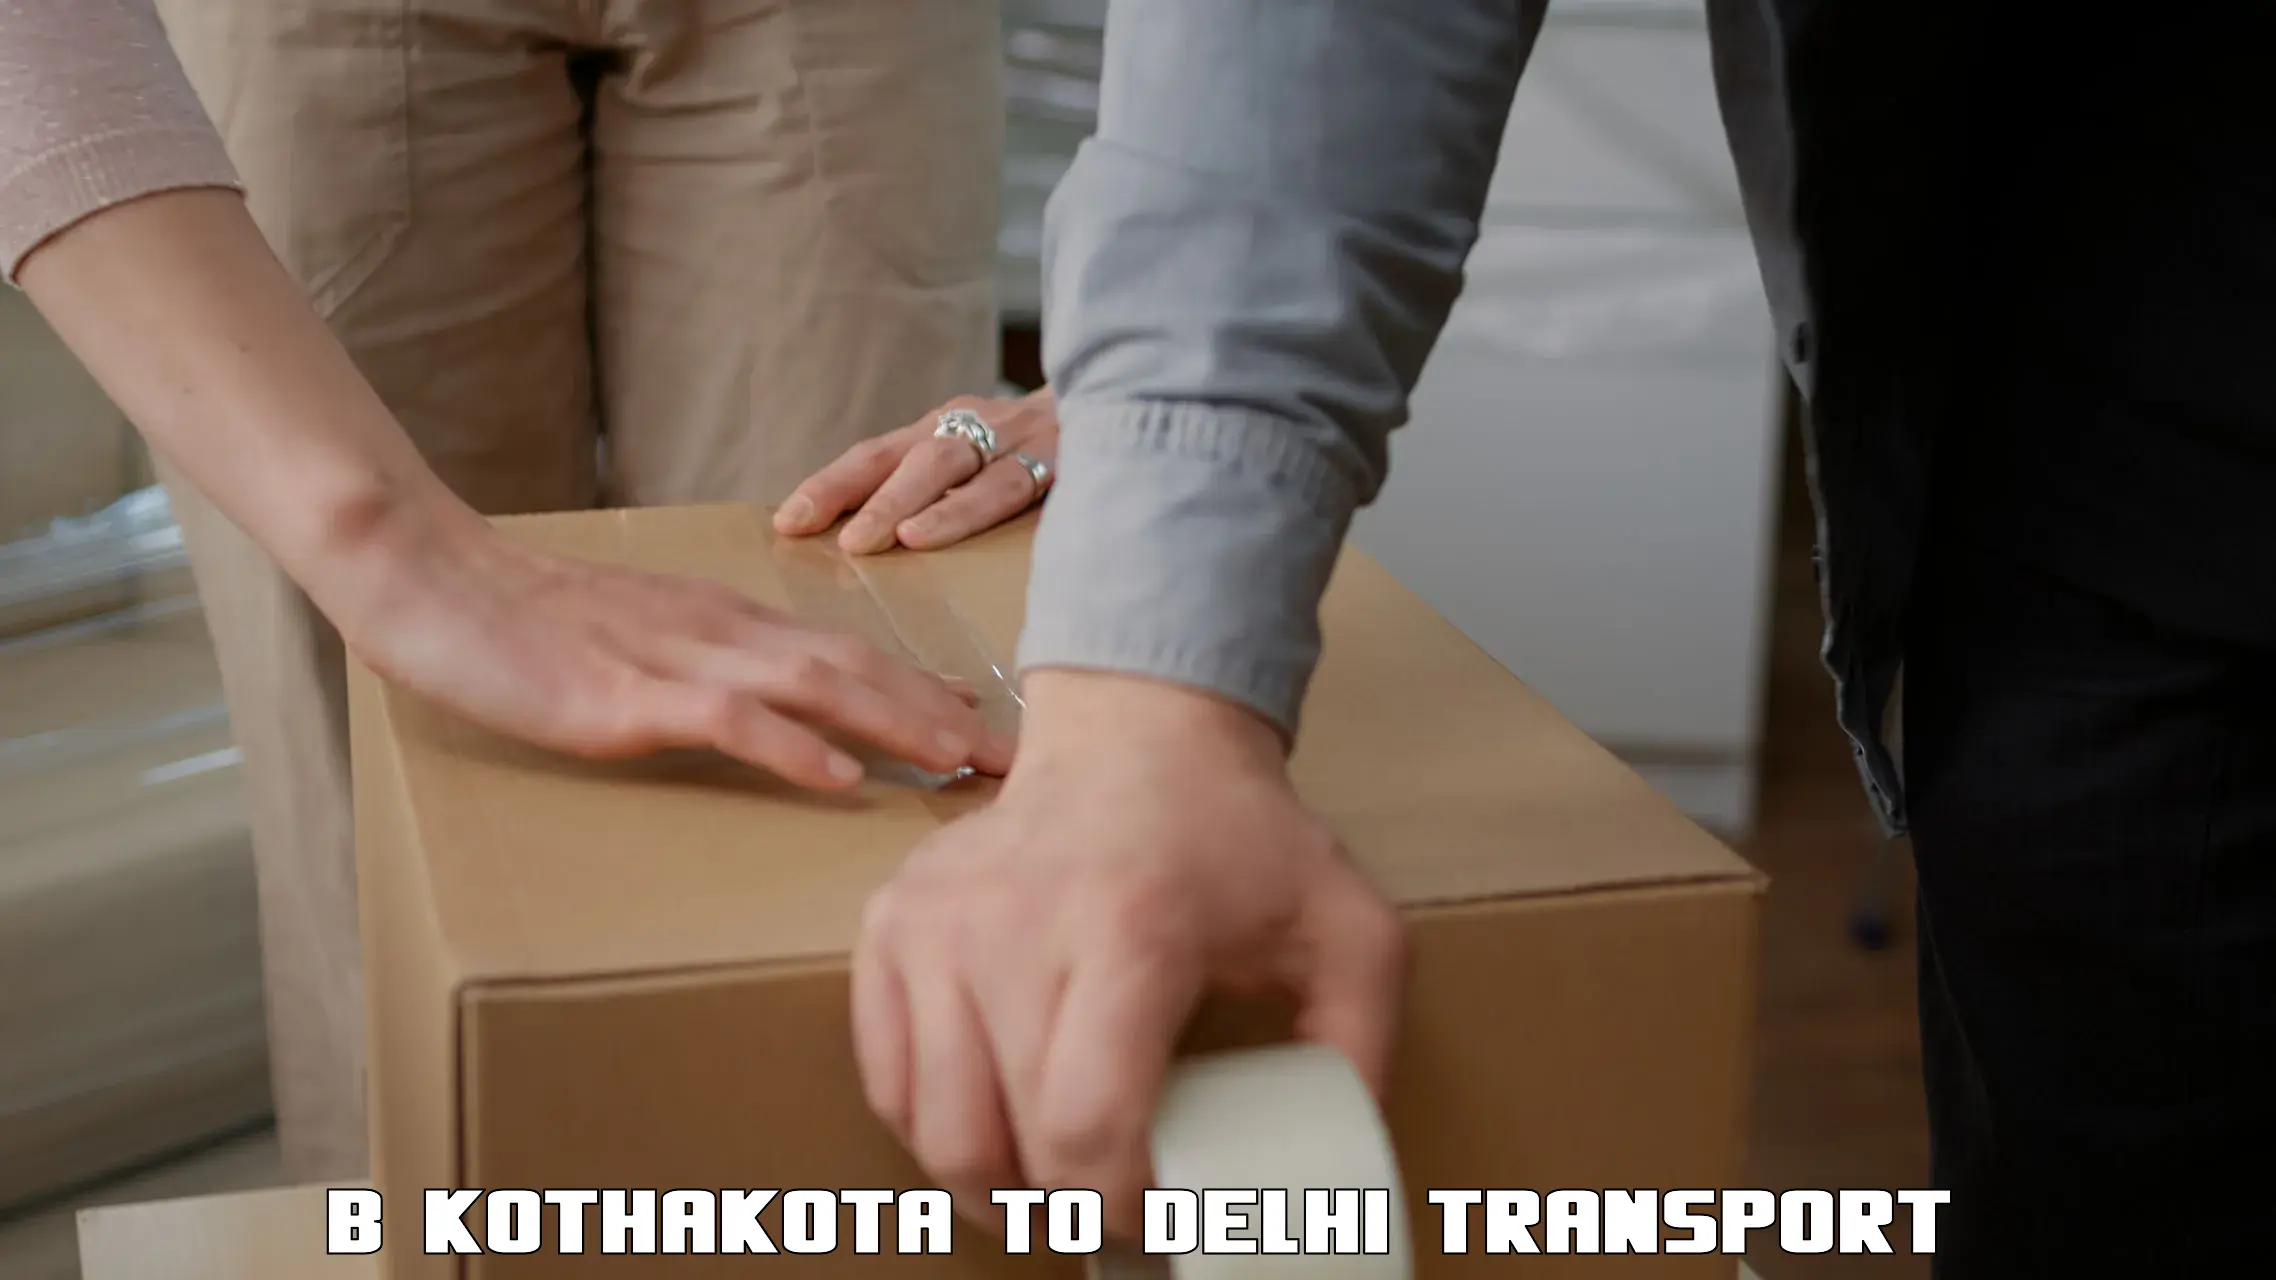 Delivery service B Kothakota to University of Delhi